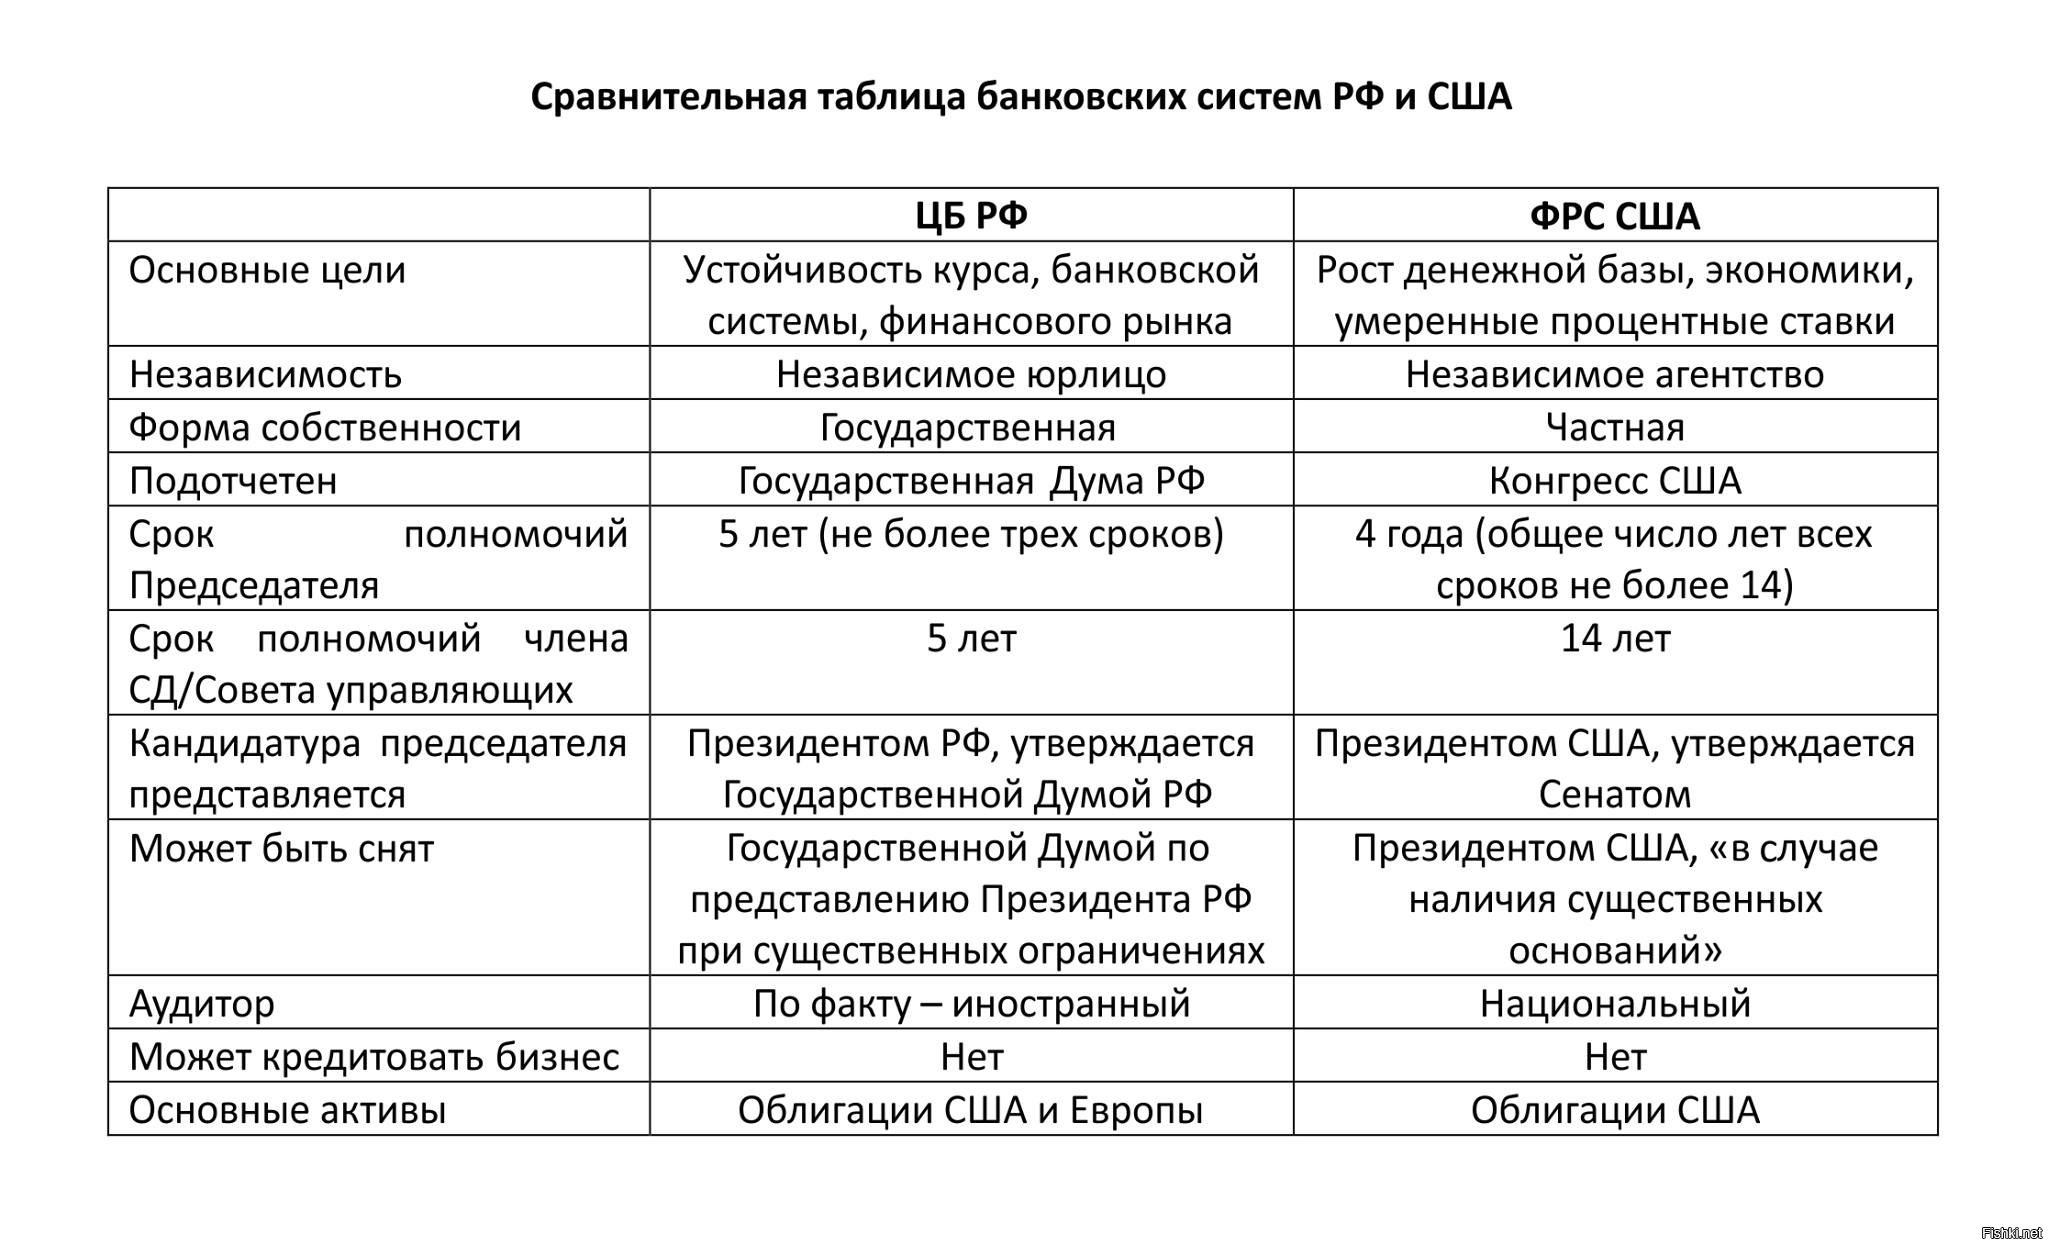 Сравнительная таблица РФ И США банковская система